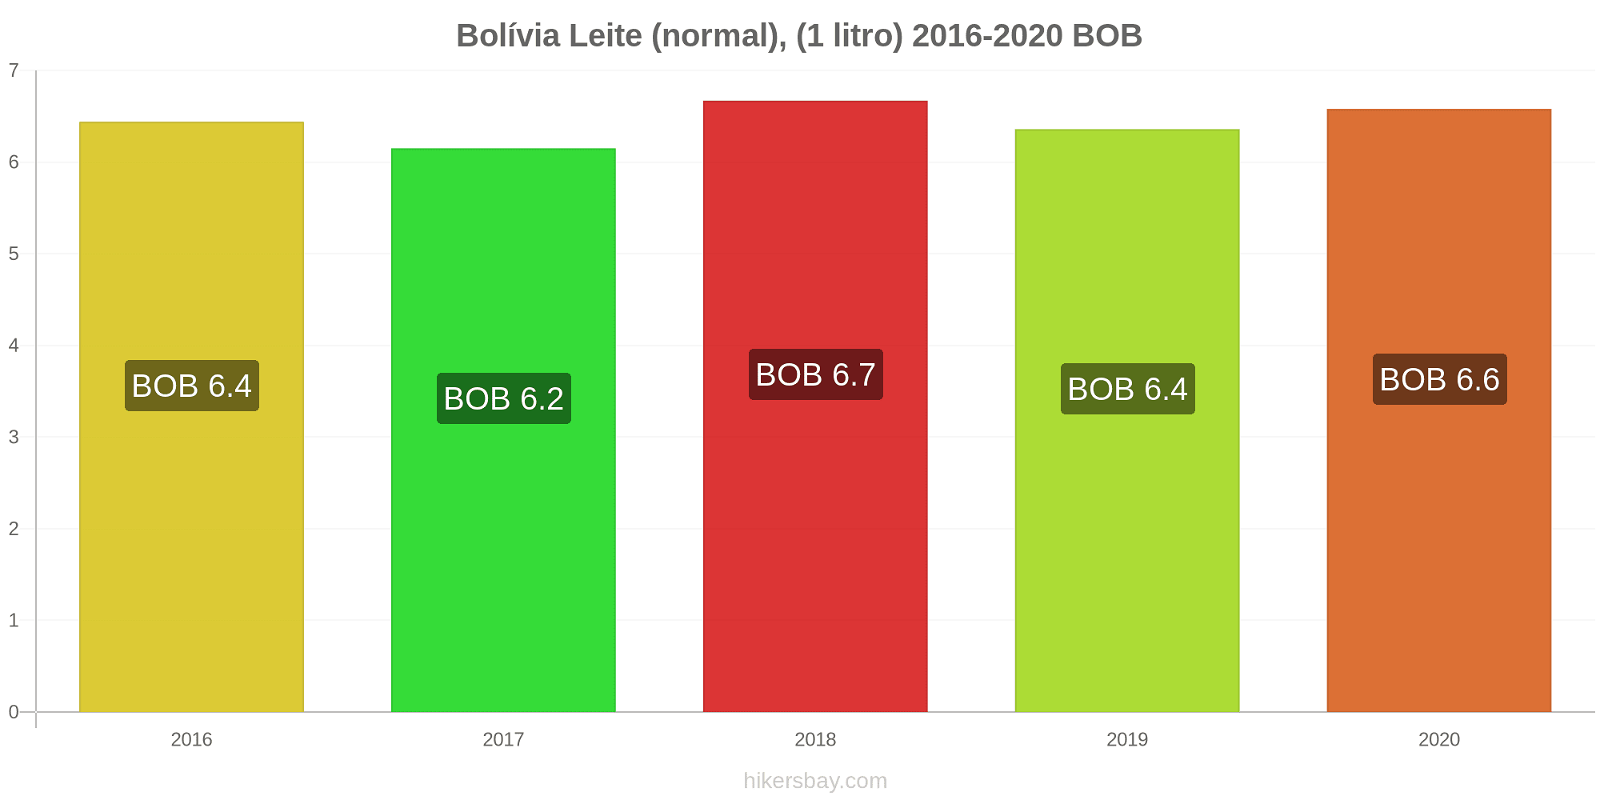 Bolívia variação de preço (Regular), leite (1 litro) hikersbay.com